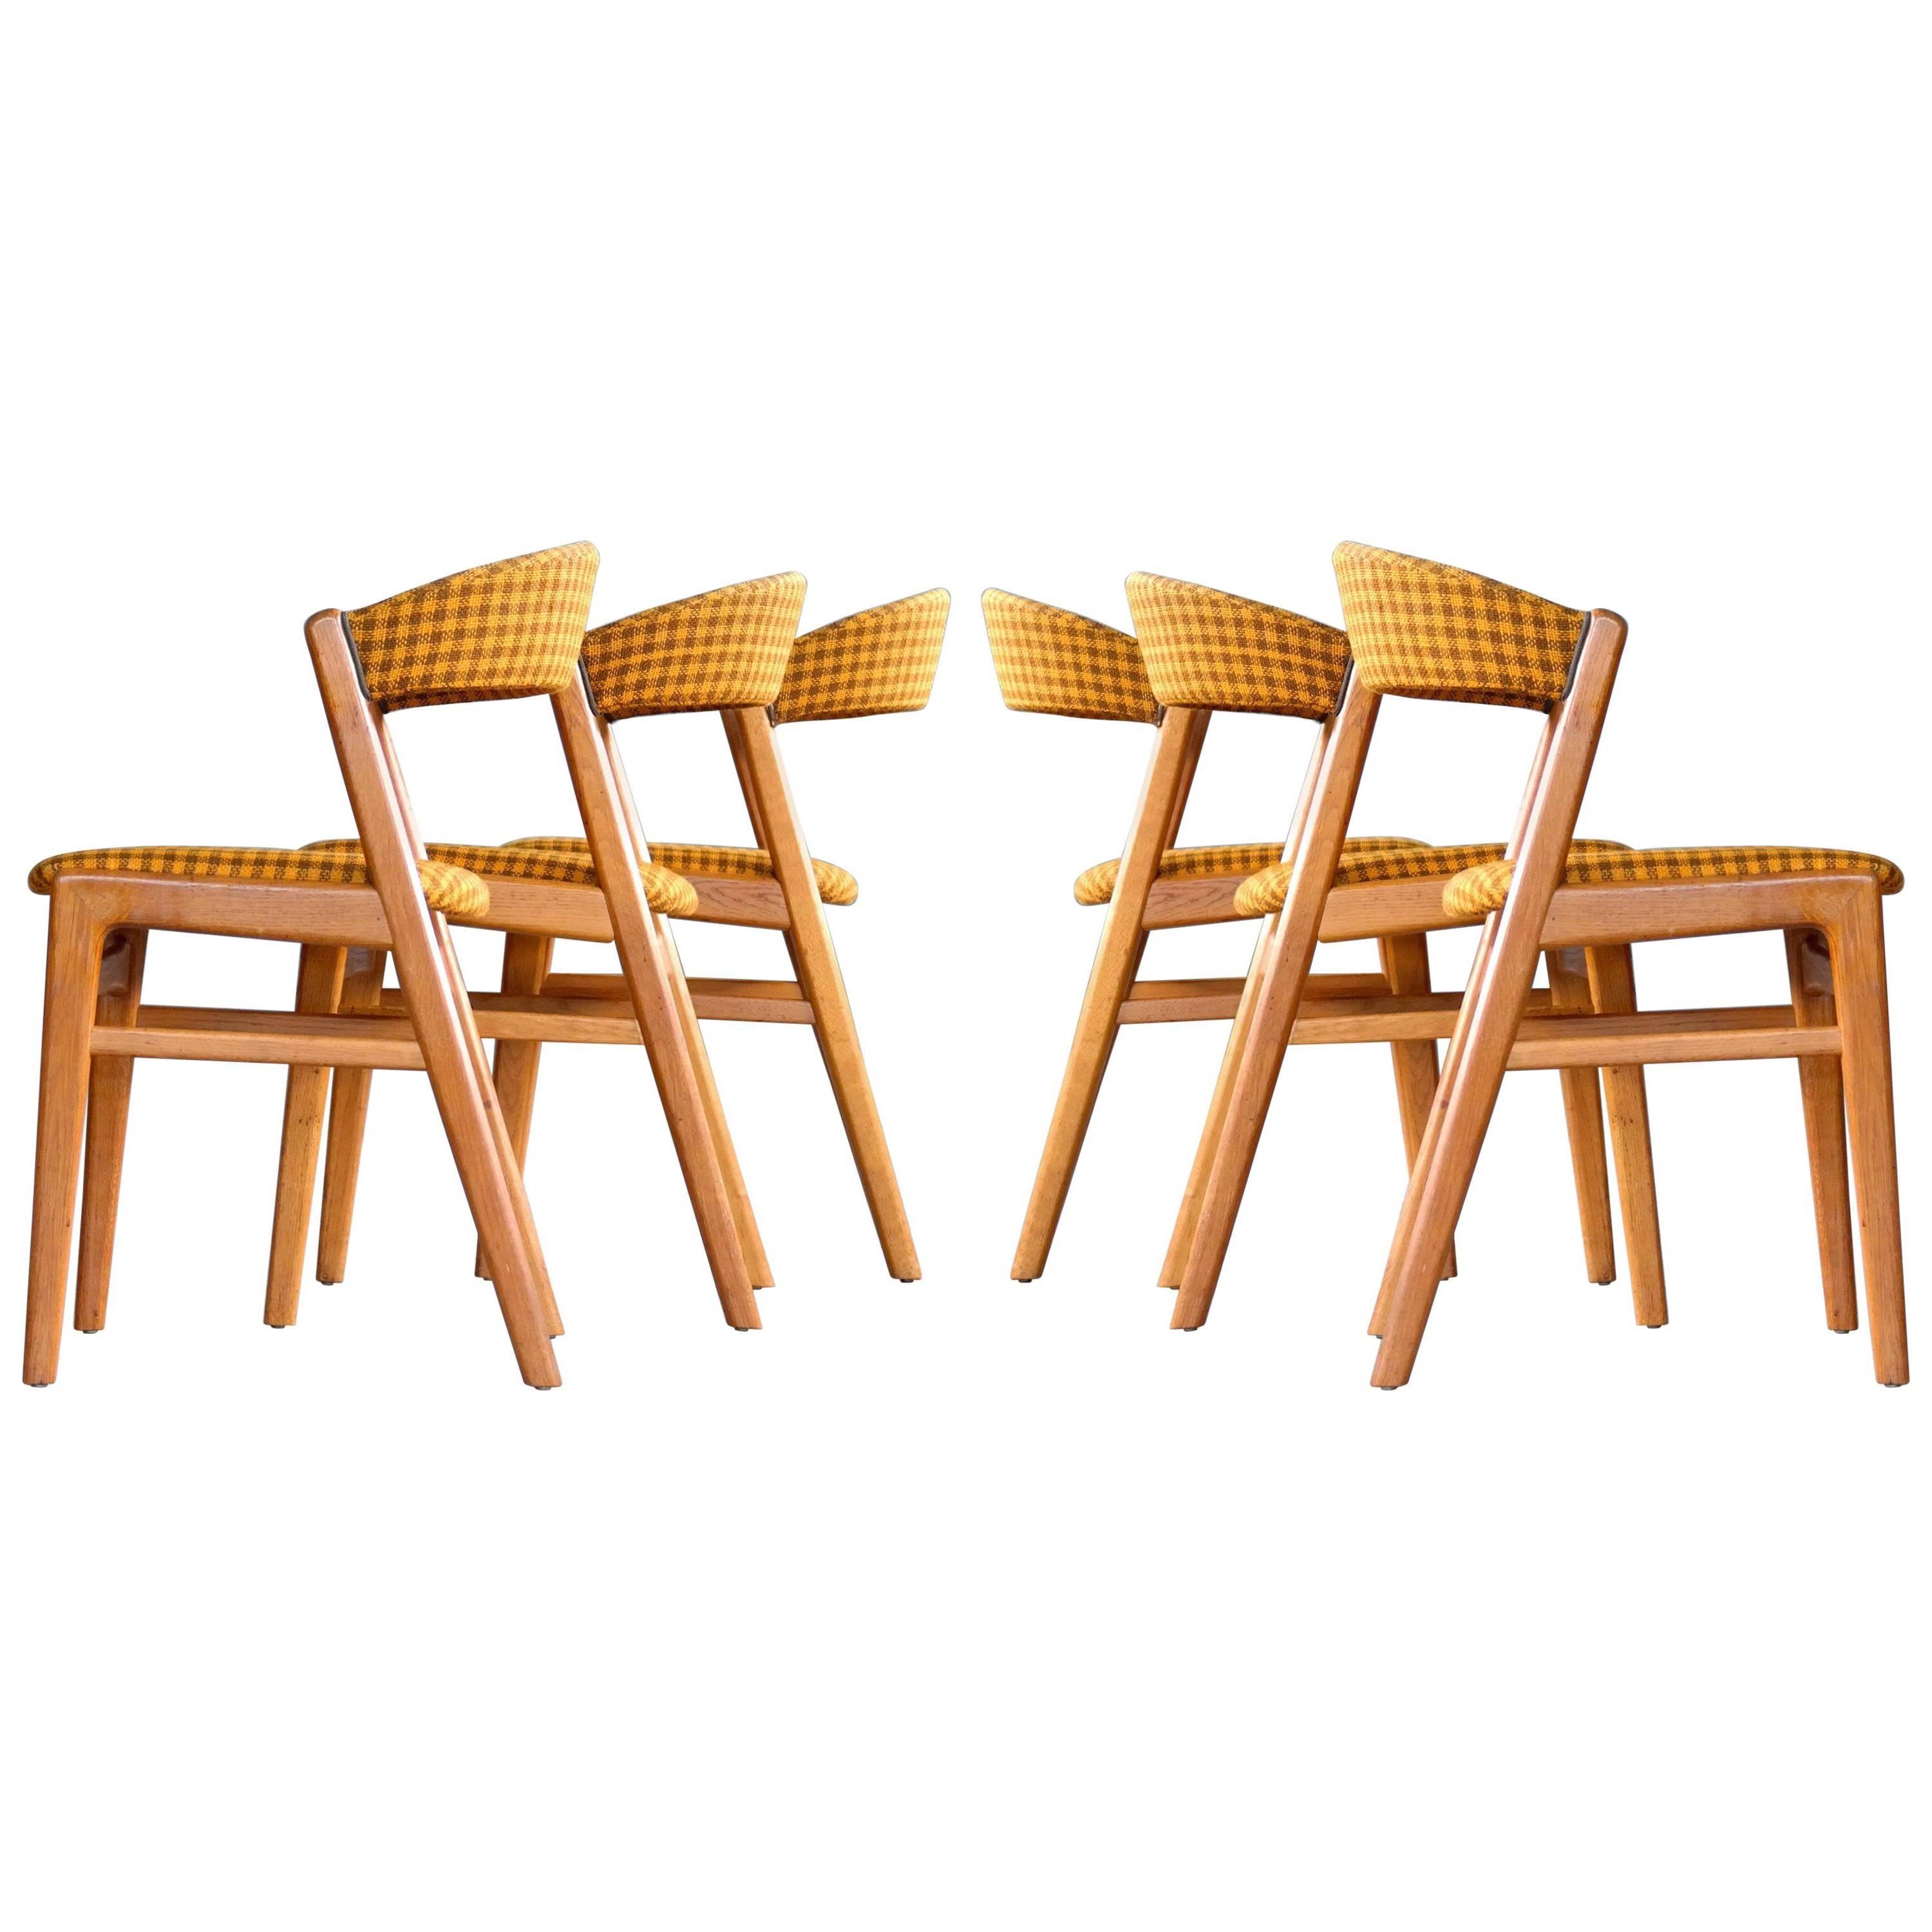 Kai Kristiansen Style Set of Six Dining Chairs Danish, Midcentury